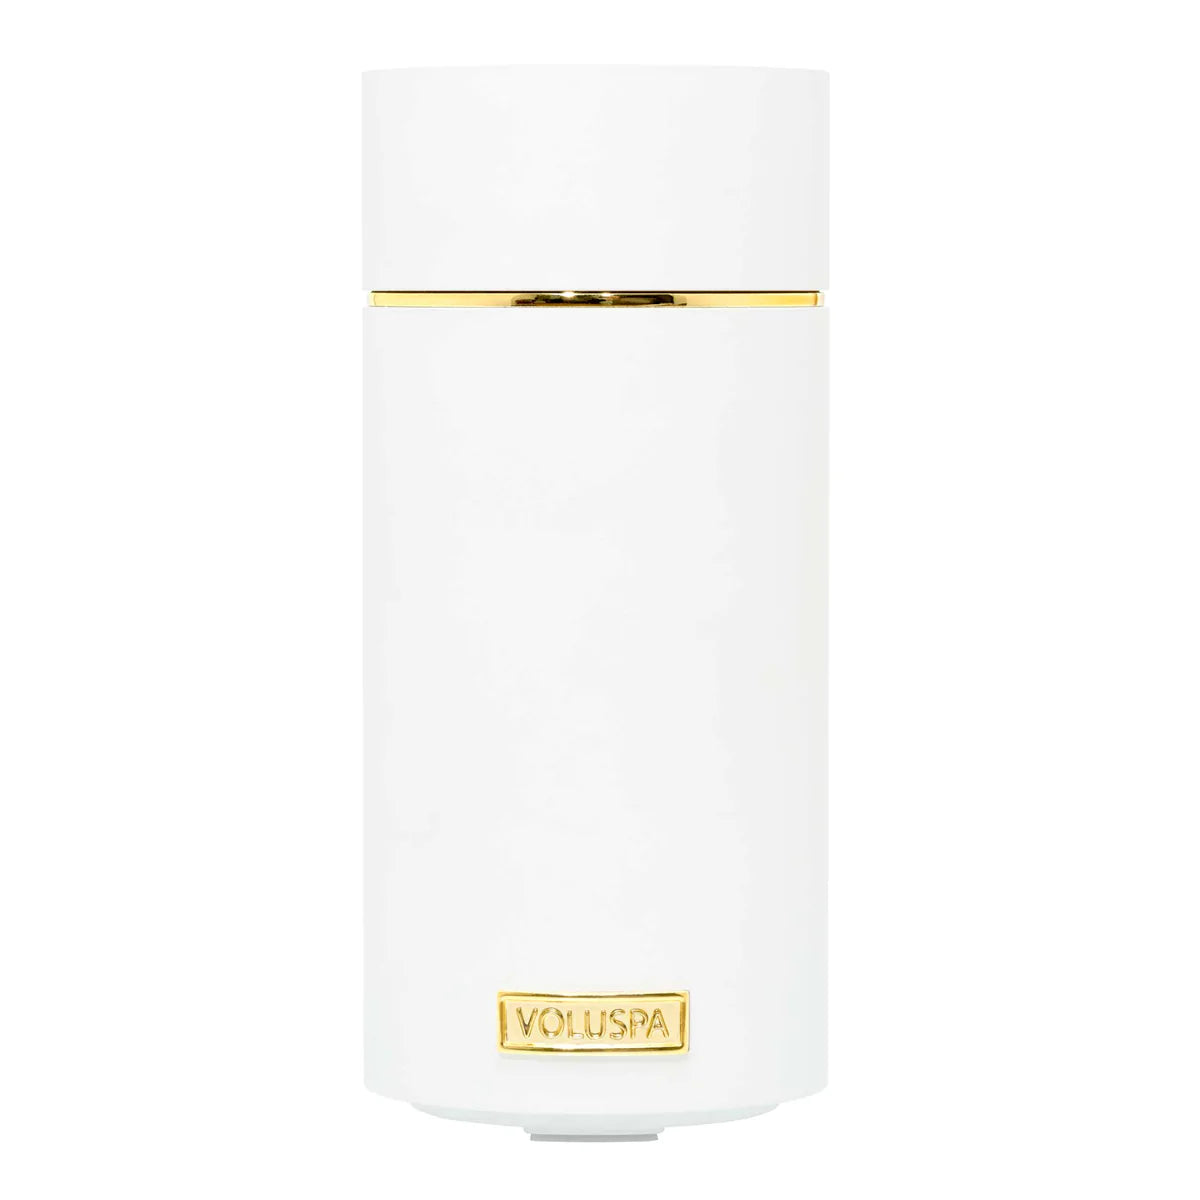 Voluspa | Fragrance Oil Diffuser Device | White